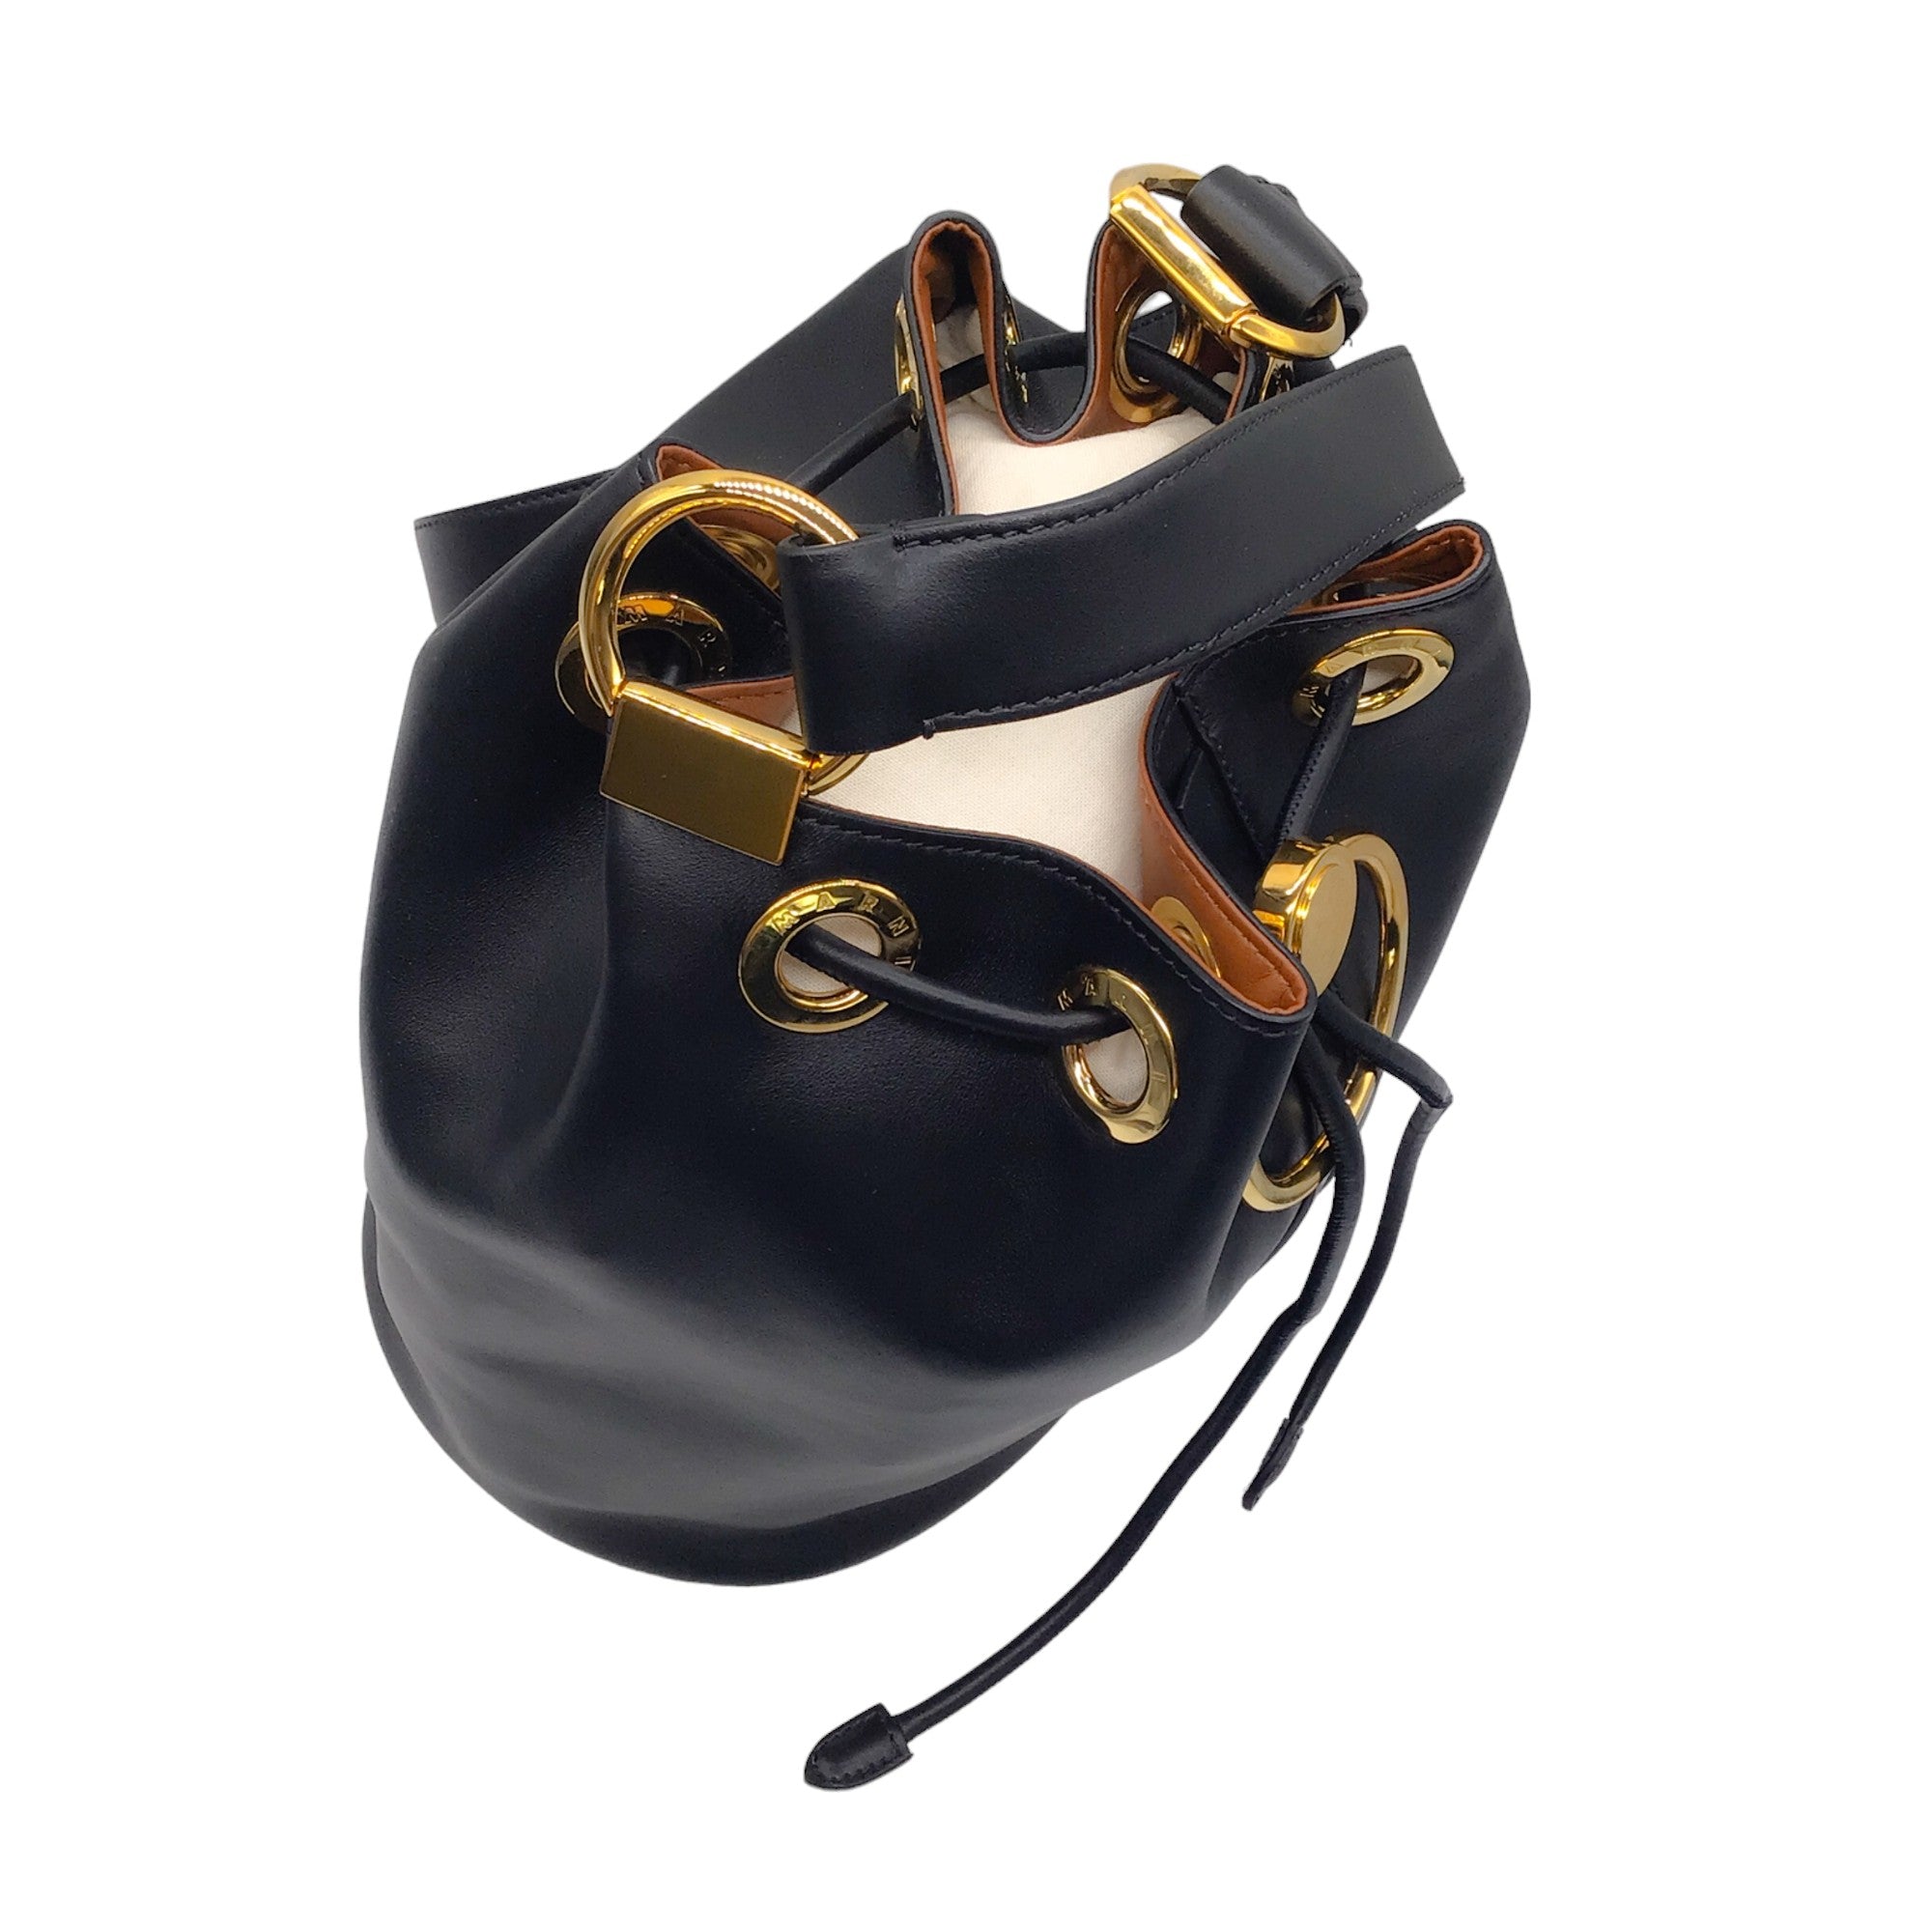 Marni Black / Gold Hardware Calfskin Leather Bucket Bag